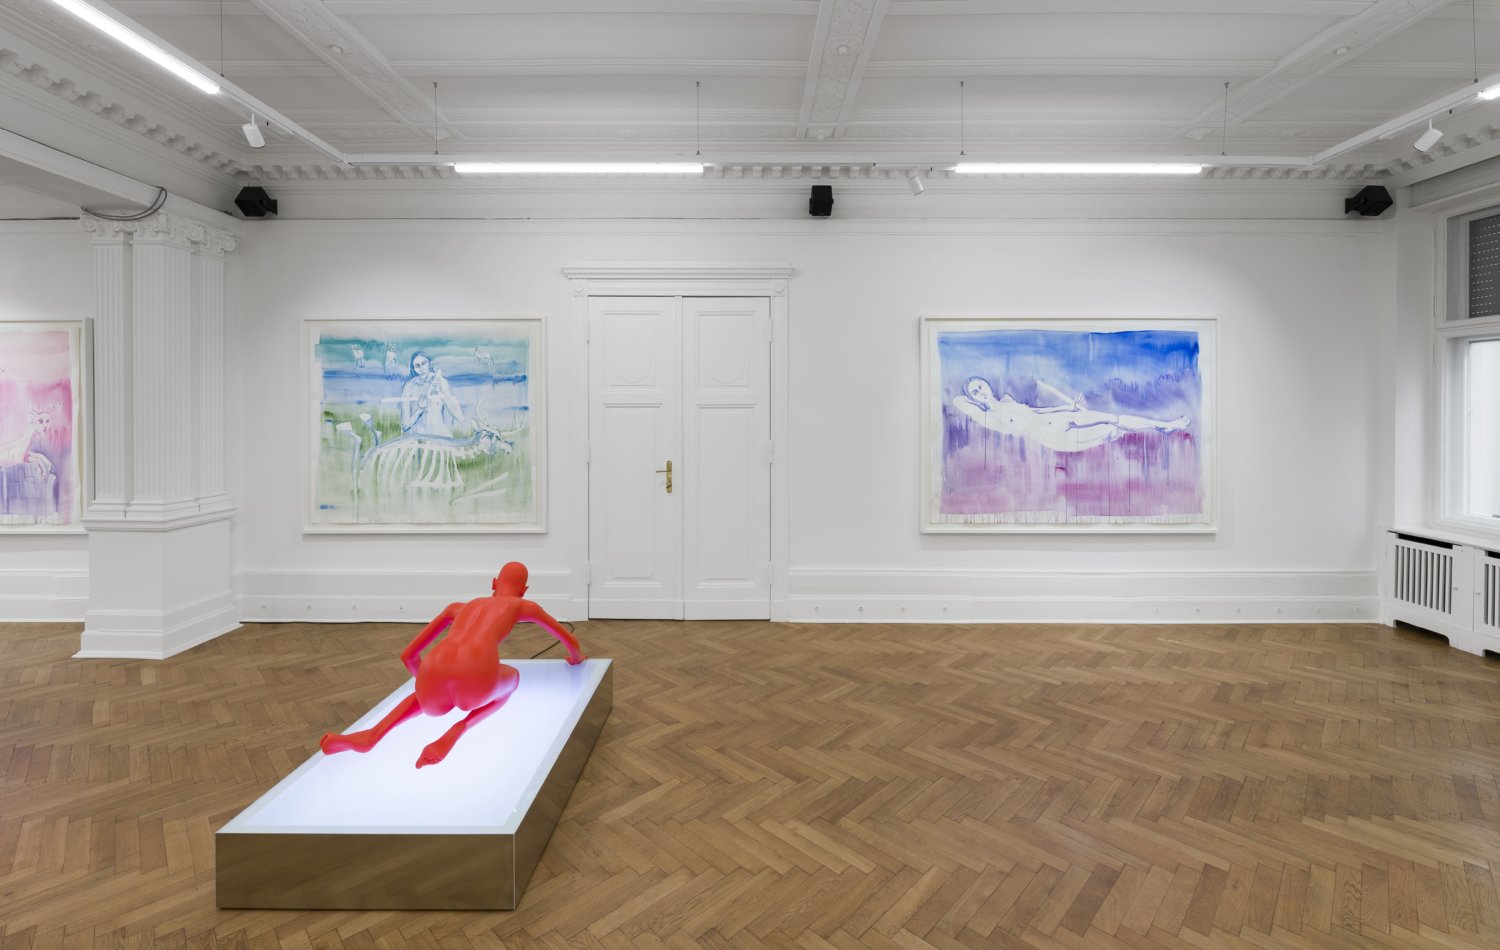 An der Wand hängen zwei große Aquarellmalereien von Marianna Simnett. Auf dem Boden steht eine Skulptur der Künstlerin, die komplett rot ist und einen nackten Körper zeigt.